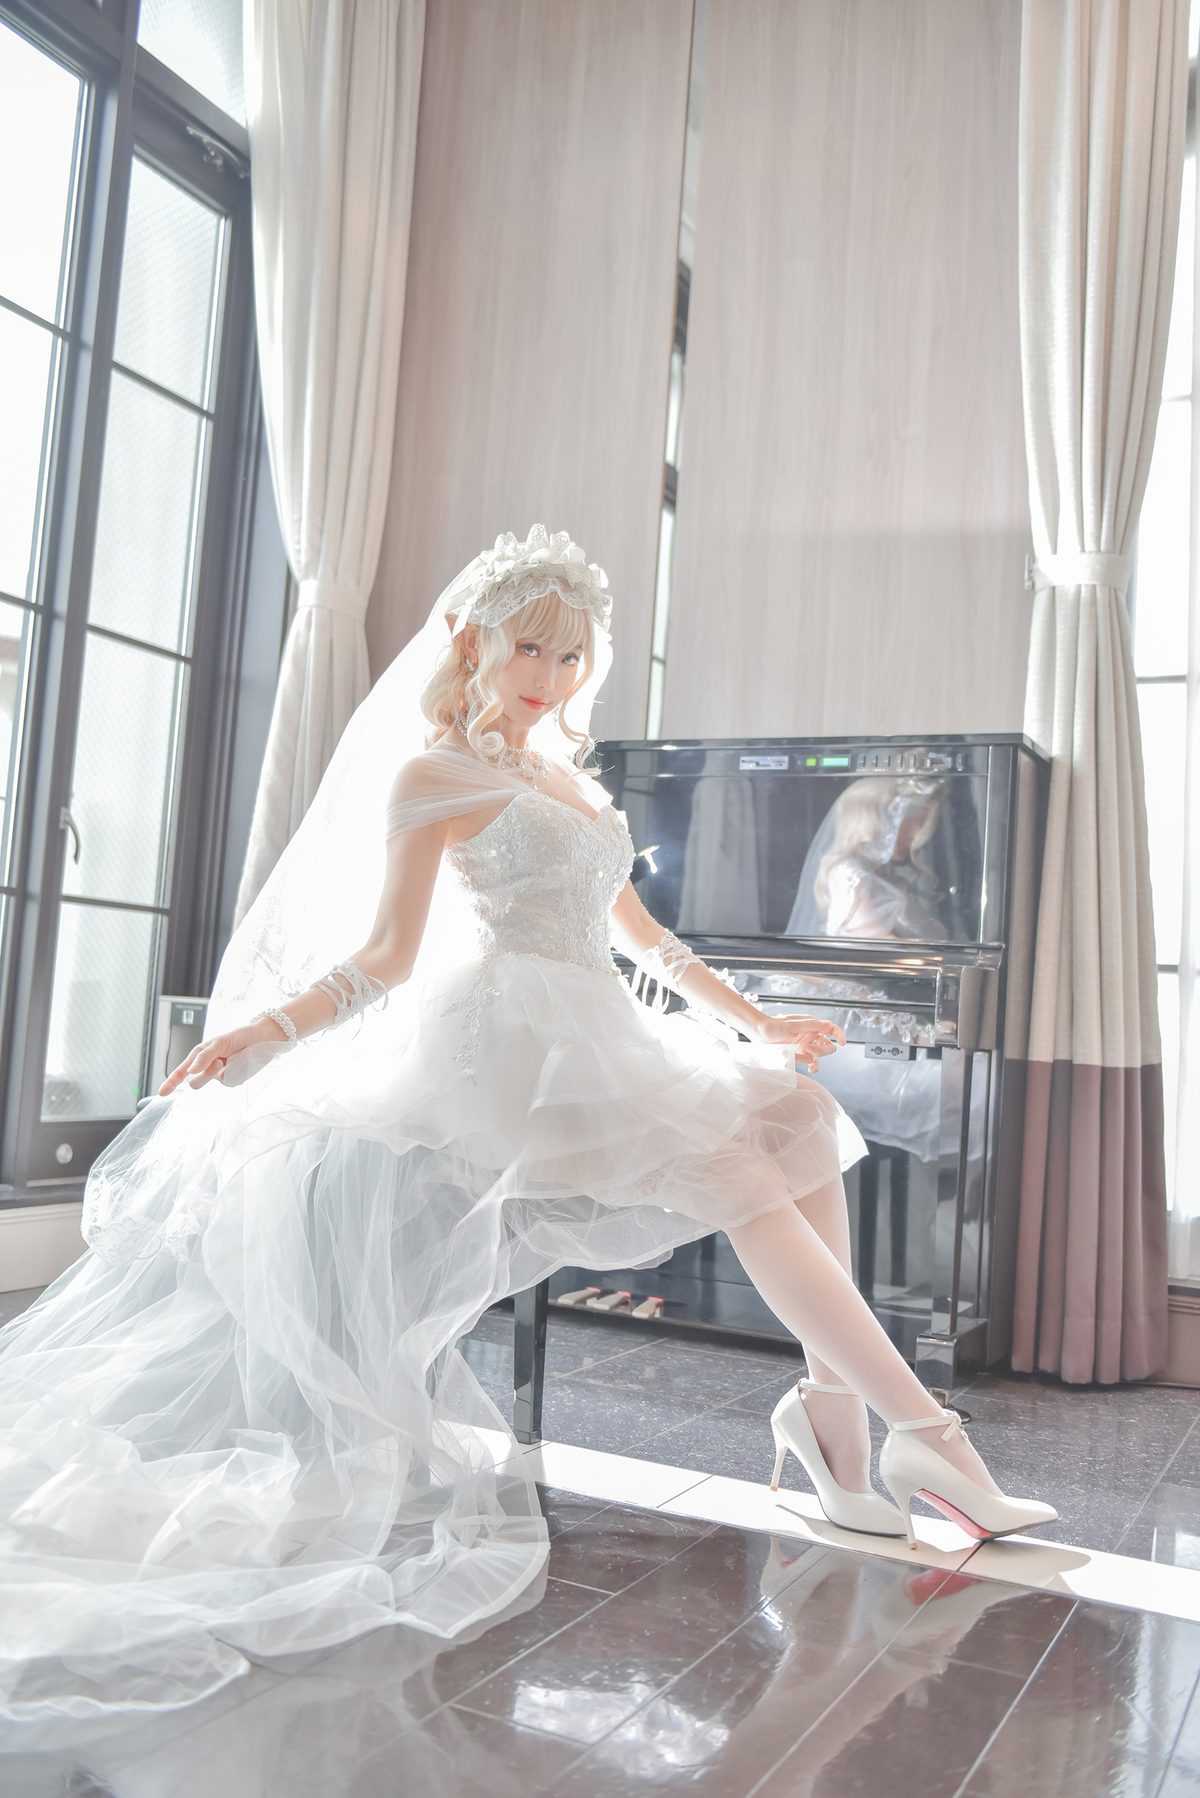 Coser@Ely_eee ElyEE子 Bride And Lingerie 0021 0747321772.jpg